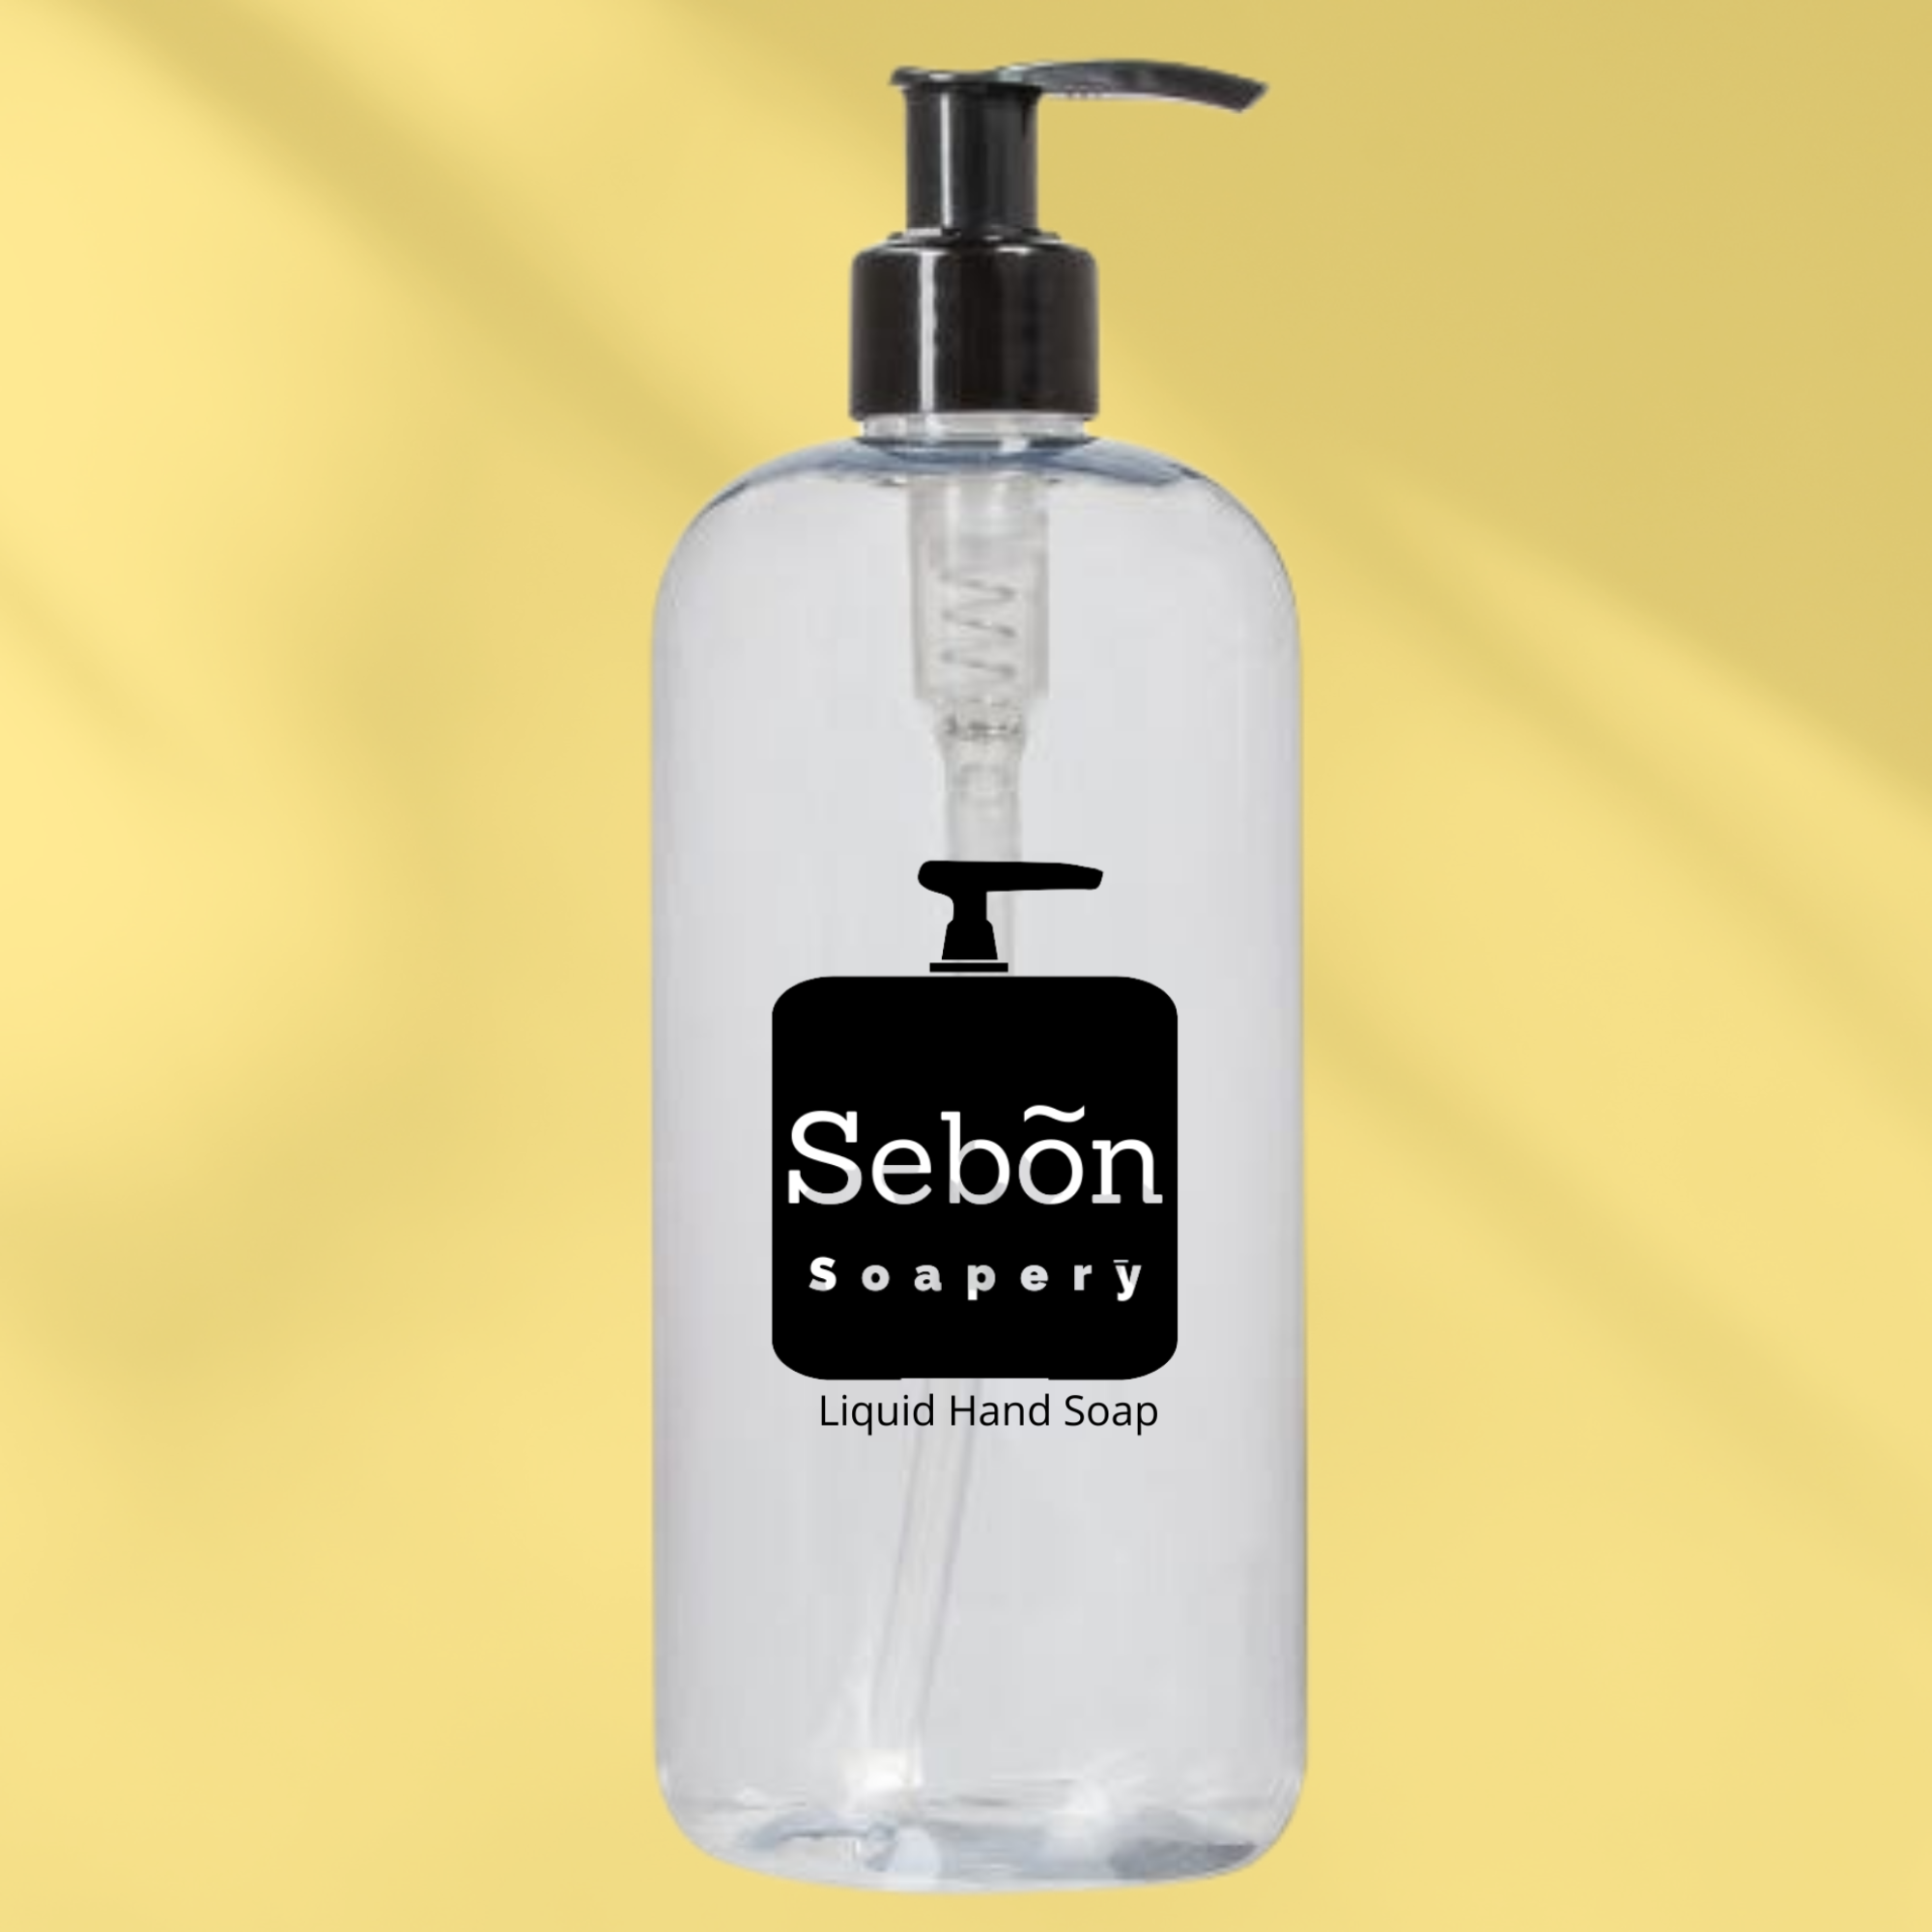 Sebon Cherry Vanilla Dr Black Scented Liquid Hand Soap with Olive Oil